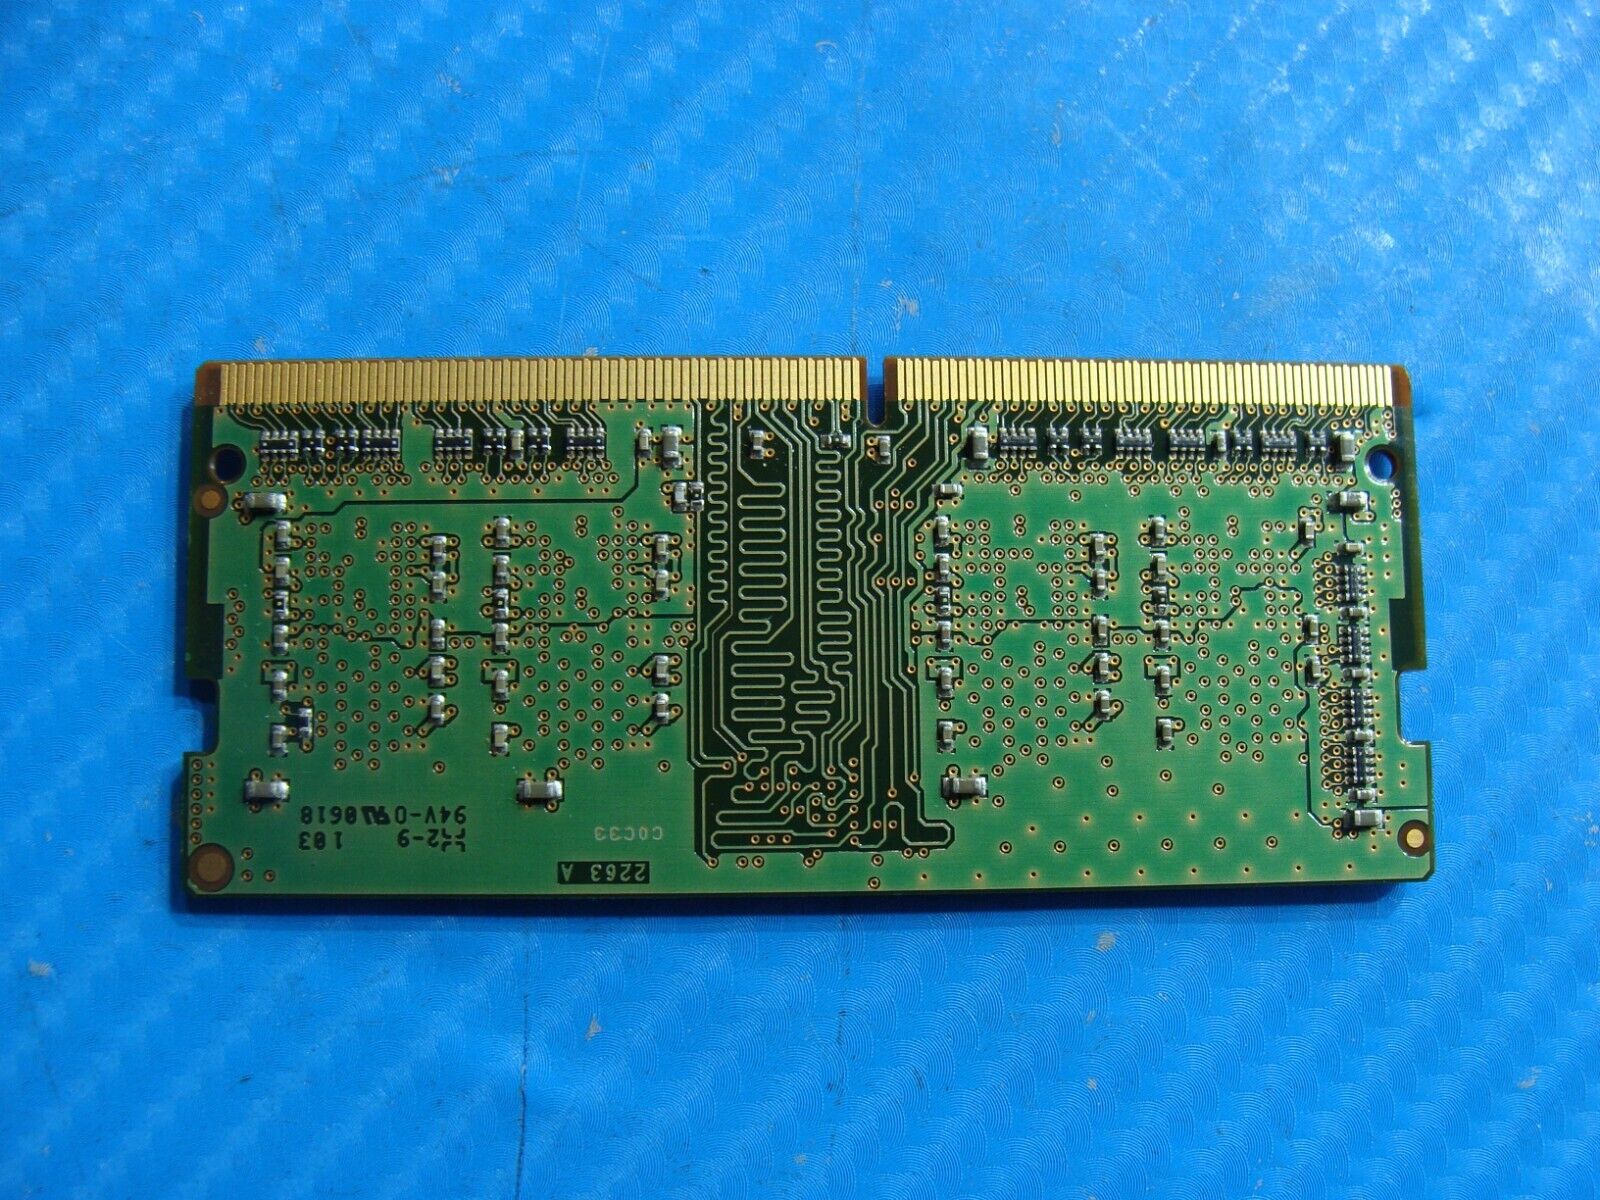 Dell 5590 Micron 4GB 1Rx16 PC4-2400T SO-DIMM Memory RAM MTA4ATF51264HZ-2G3E1